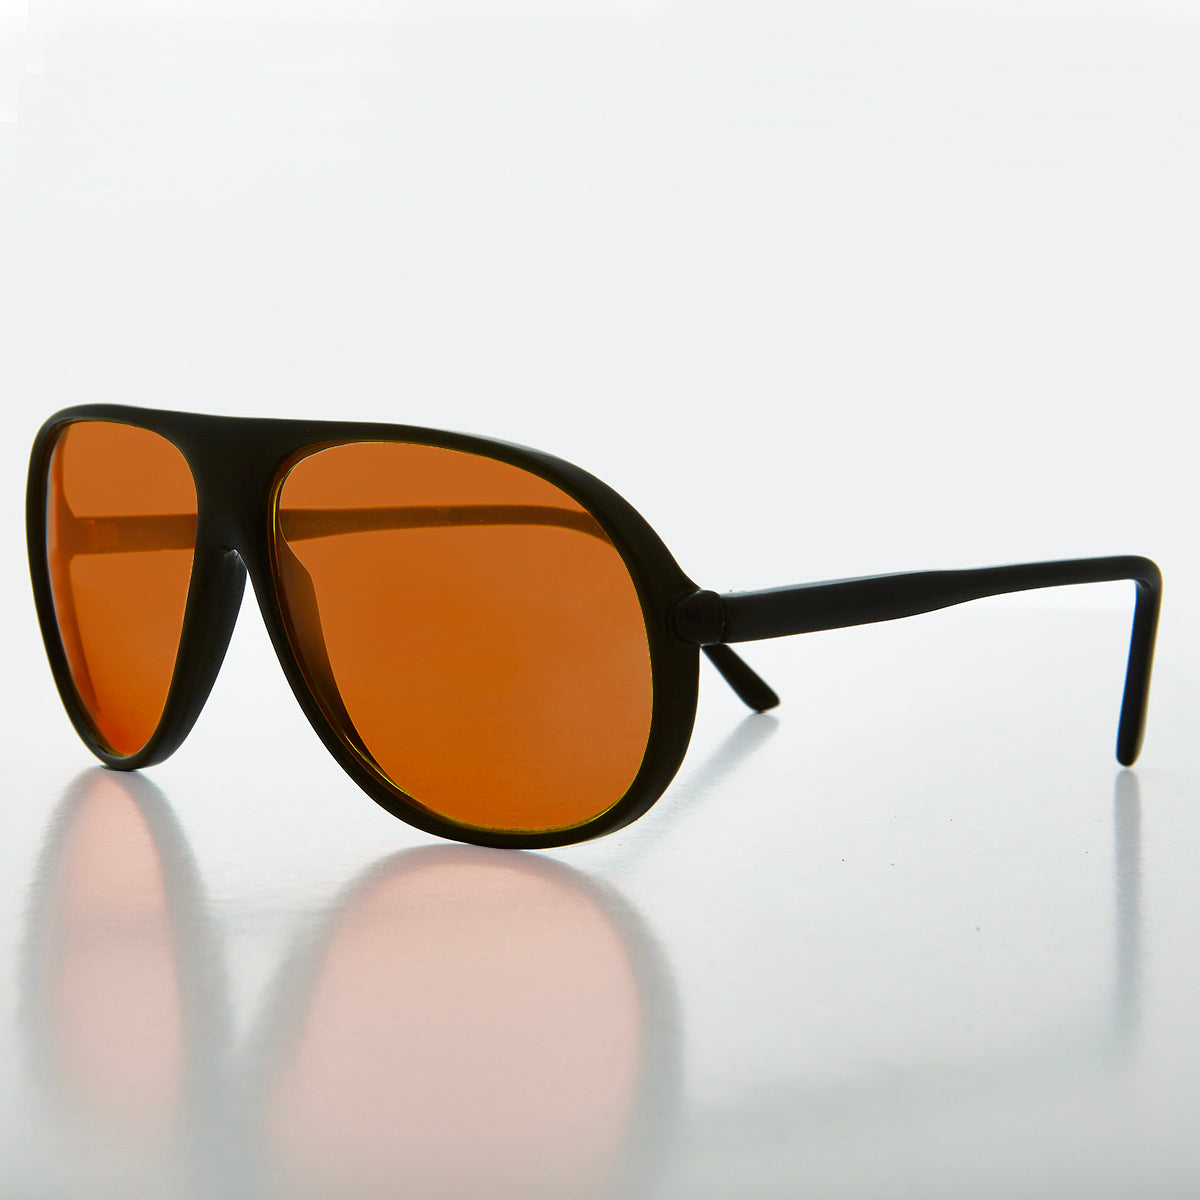 Pilot Sunglasses with Orange Lenses